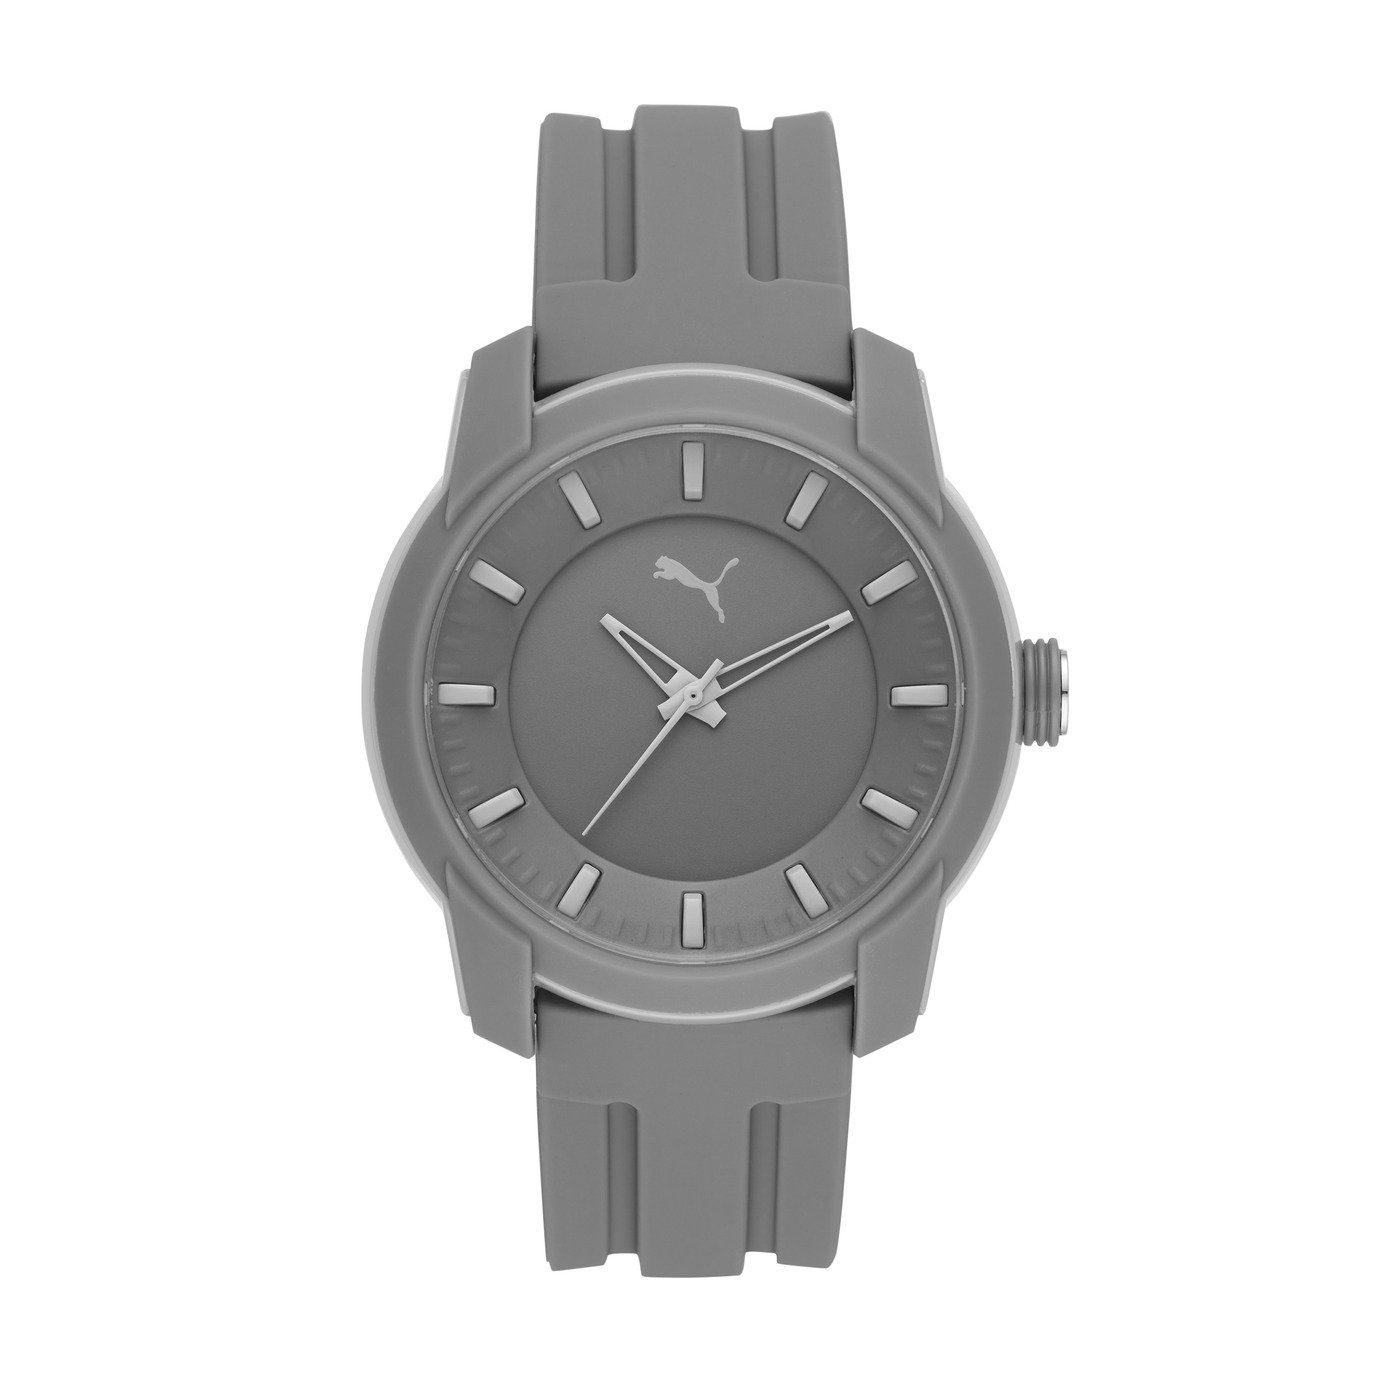 puma silicone watch